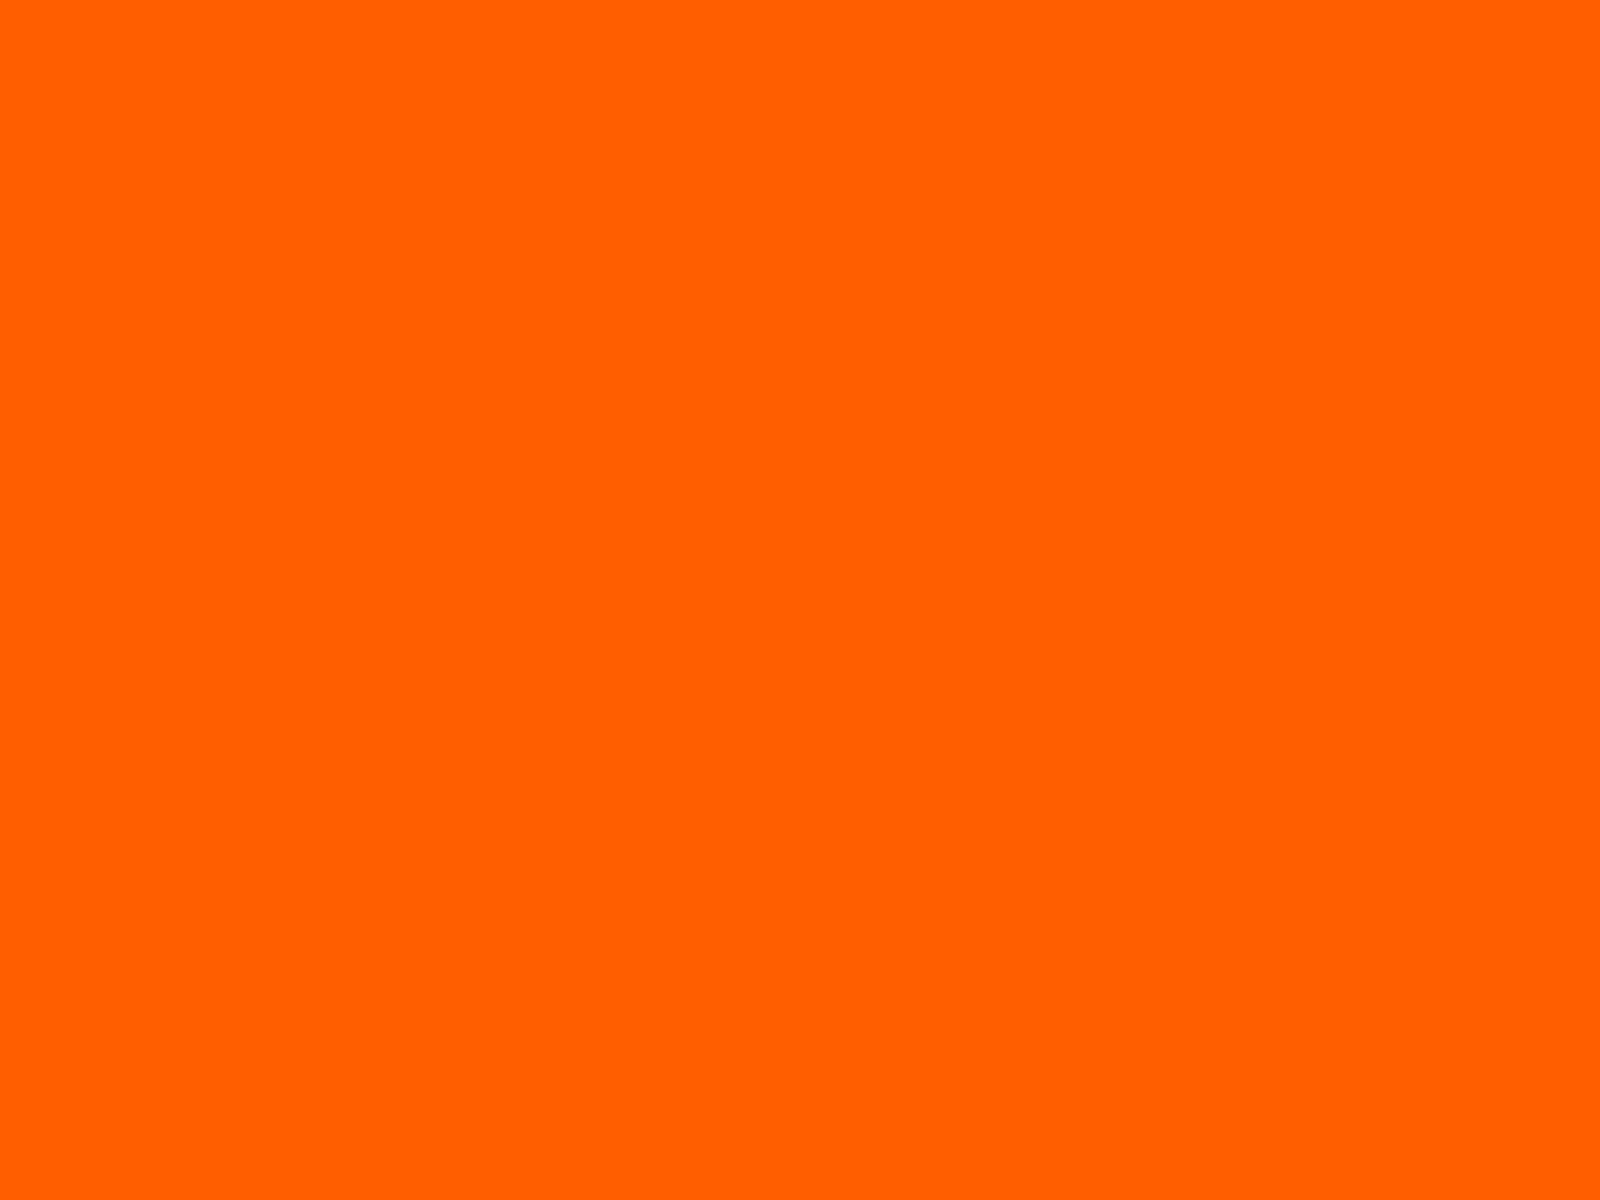 Le orange vif